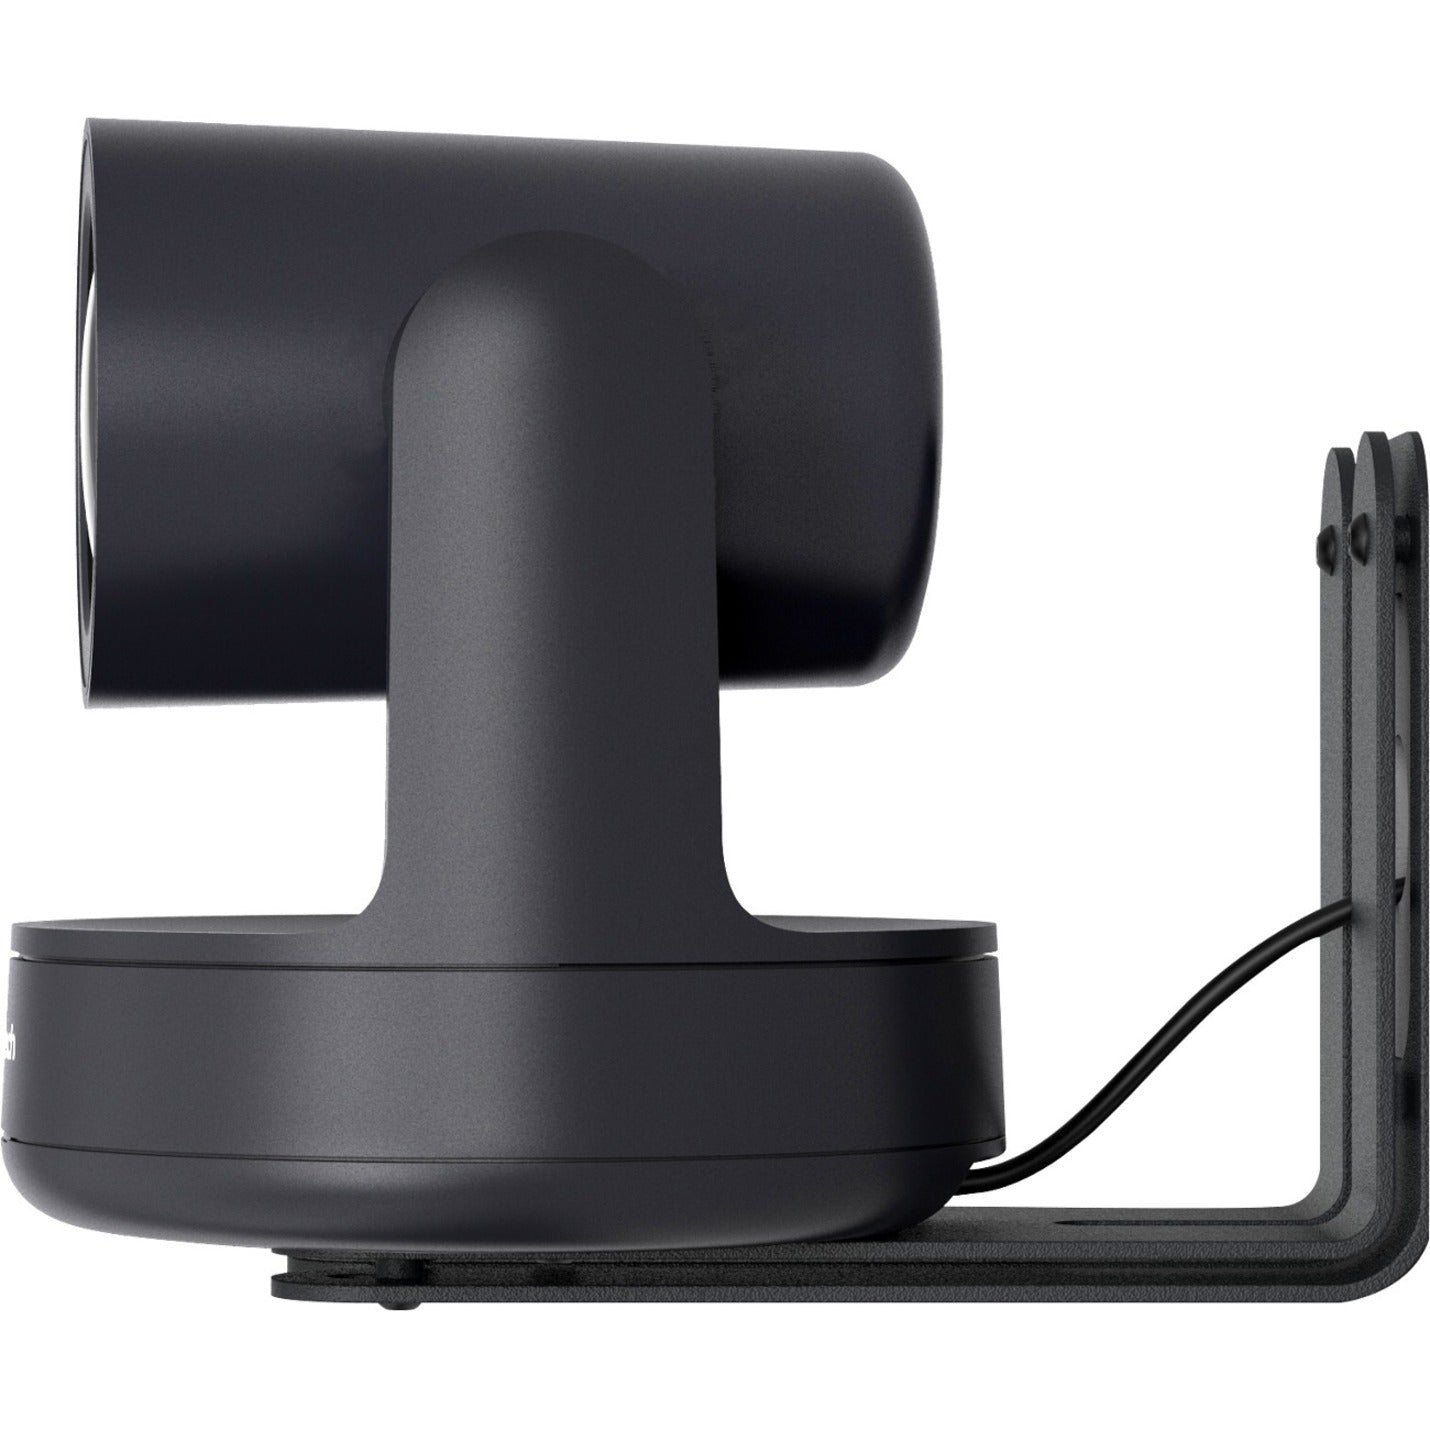 Heckler Design H599-BG PTZ Camera Mount, Durable, Fingerprint Resistant, Scratch Resistant, Cable Management